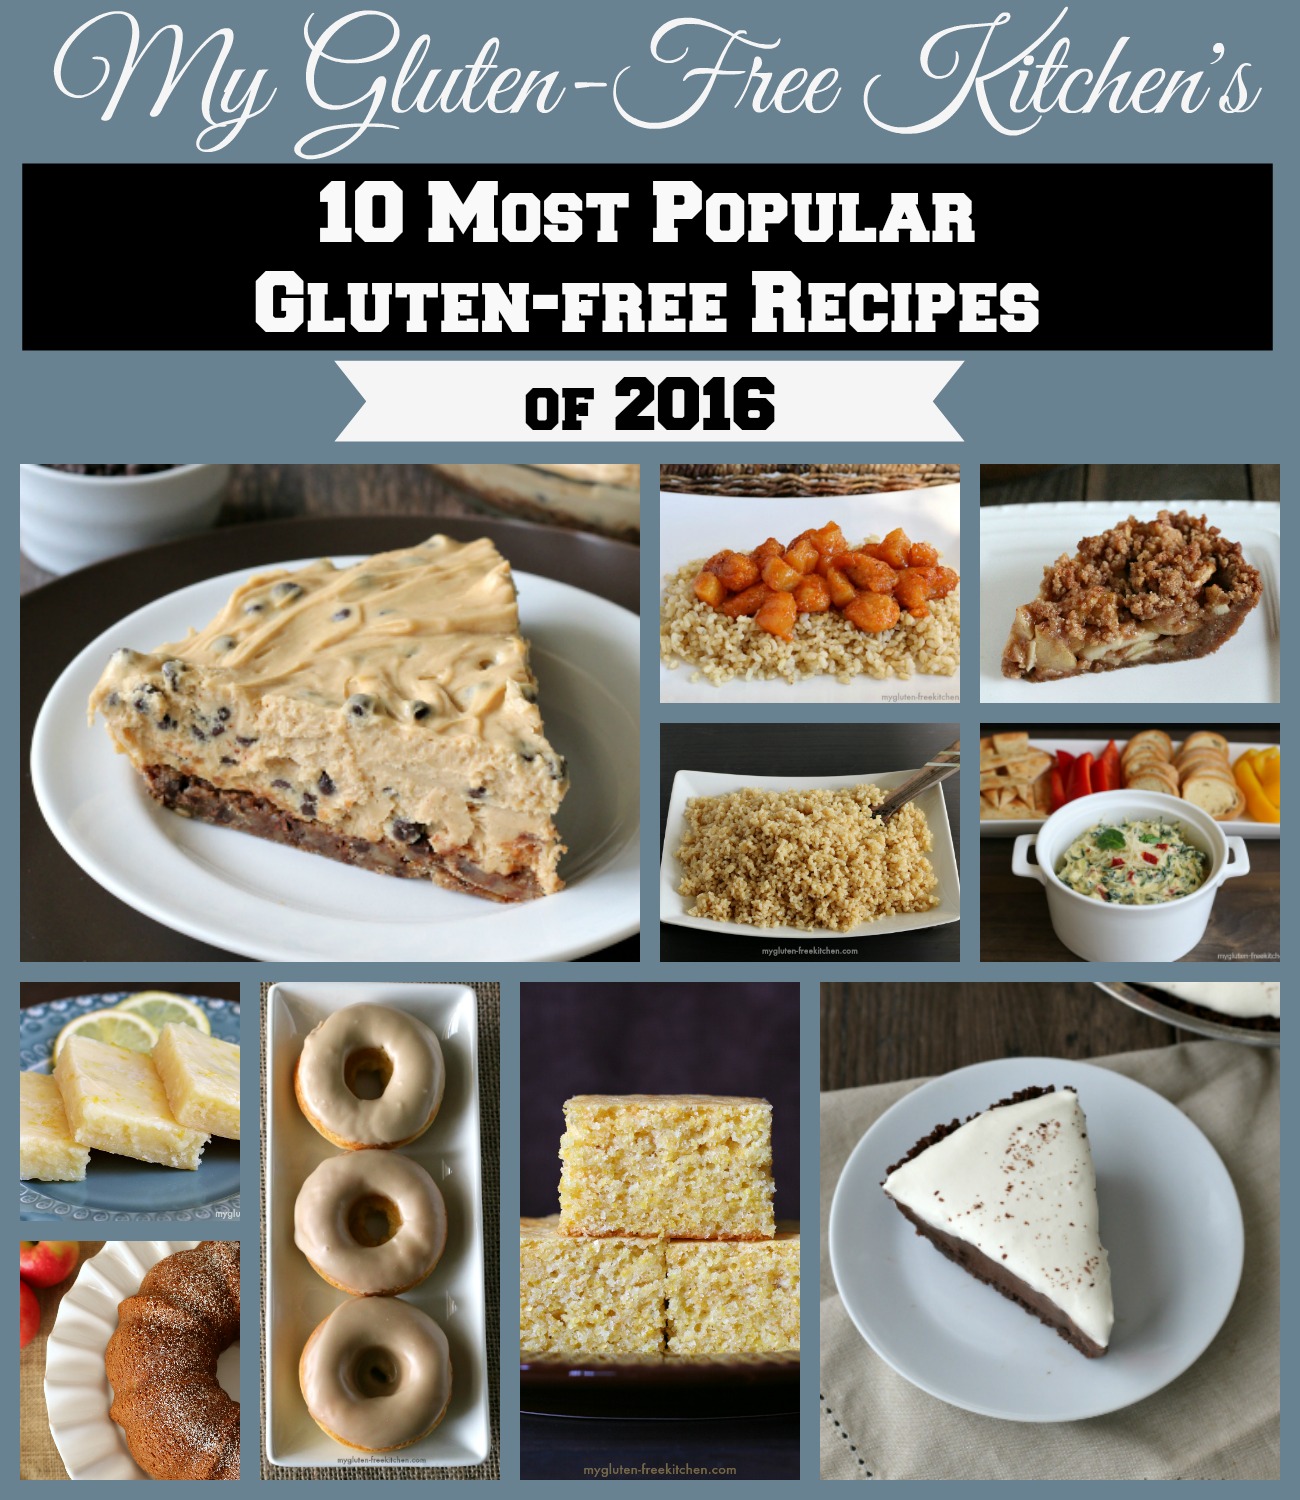 Best Gluten-free recipes of 2016 from My Gluten-free Kitchen